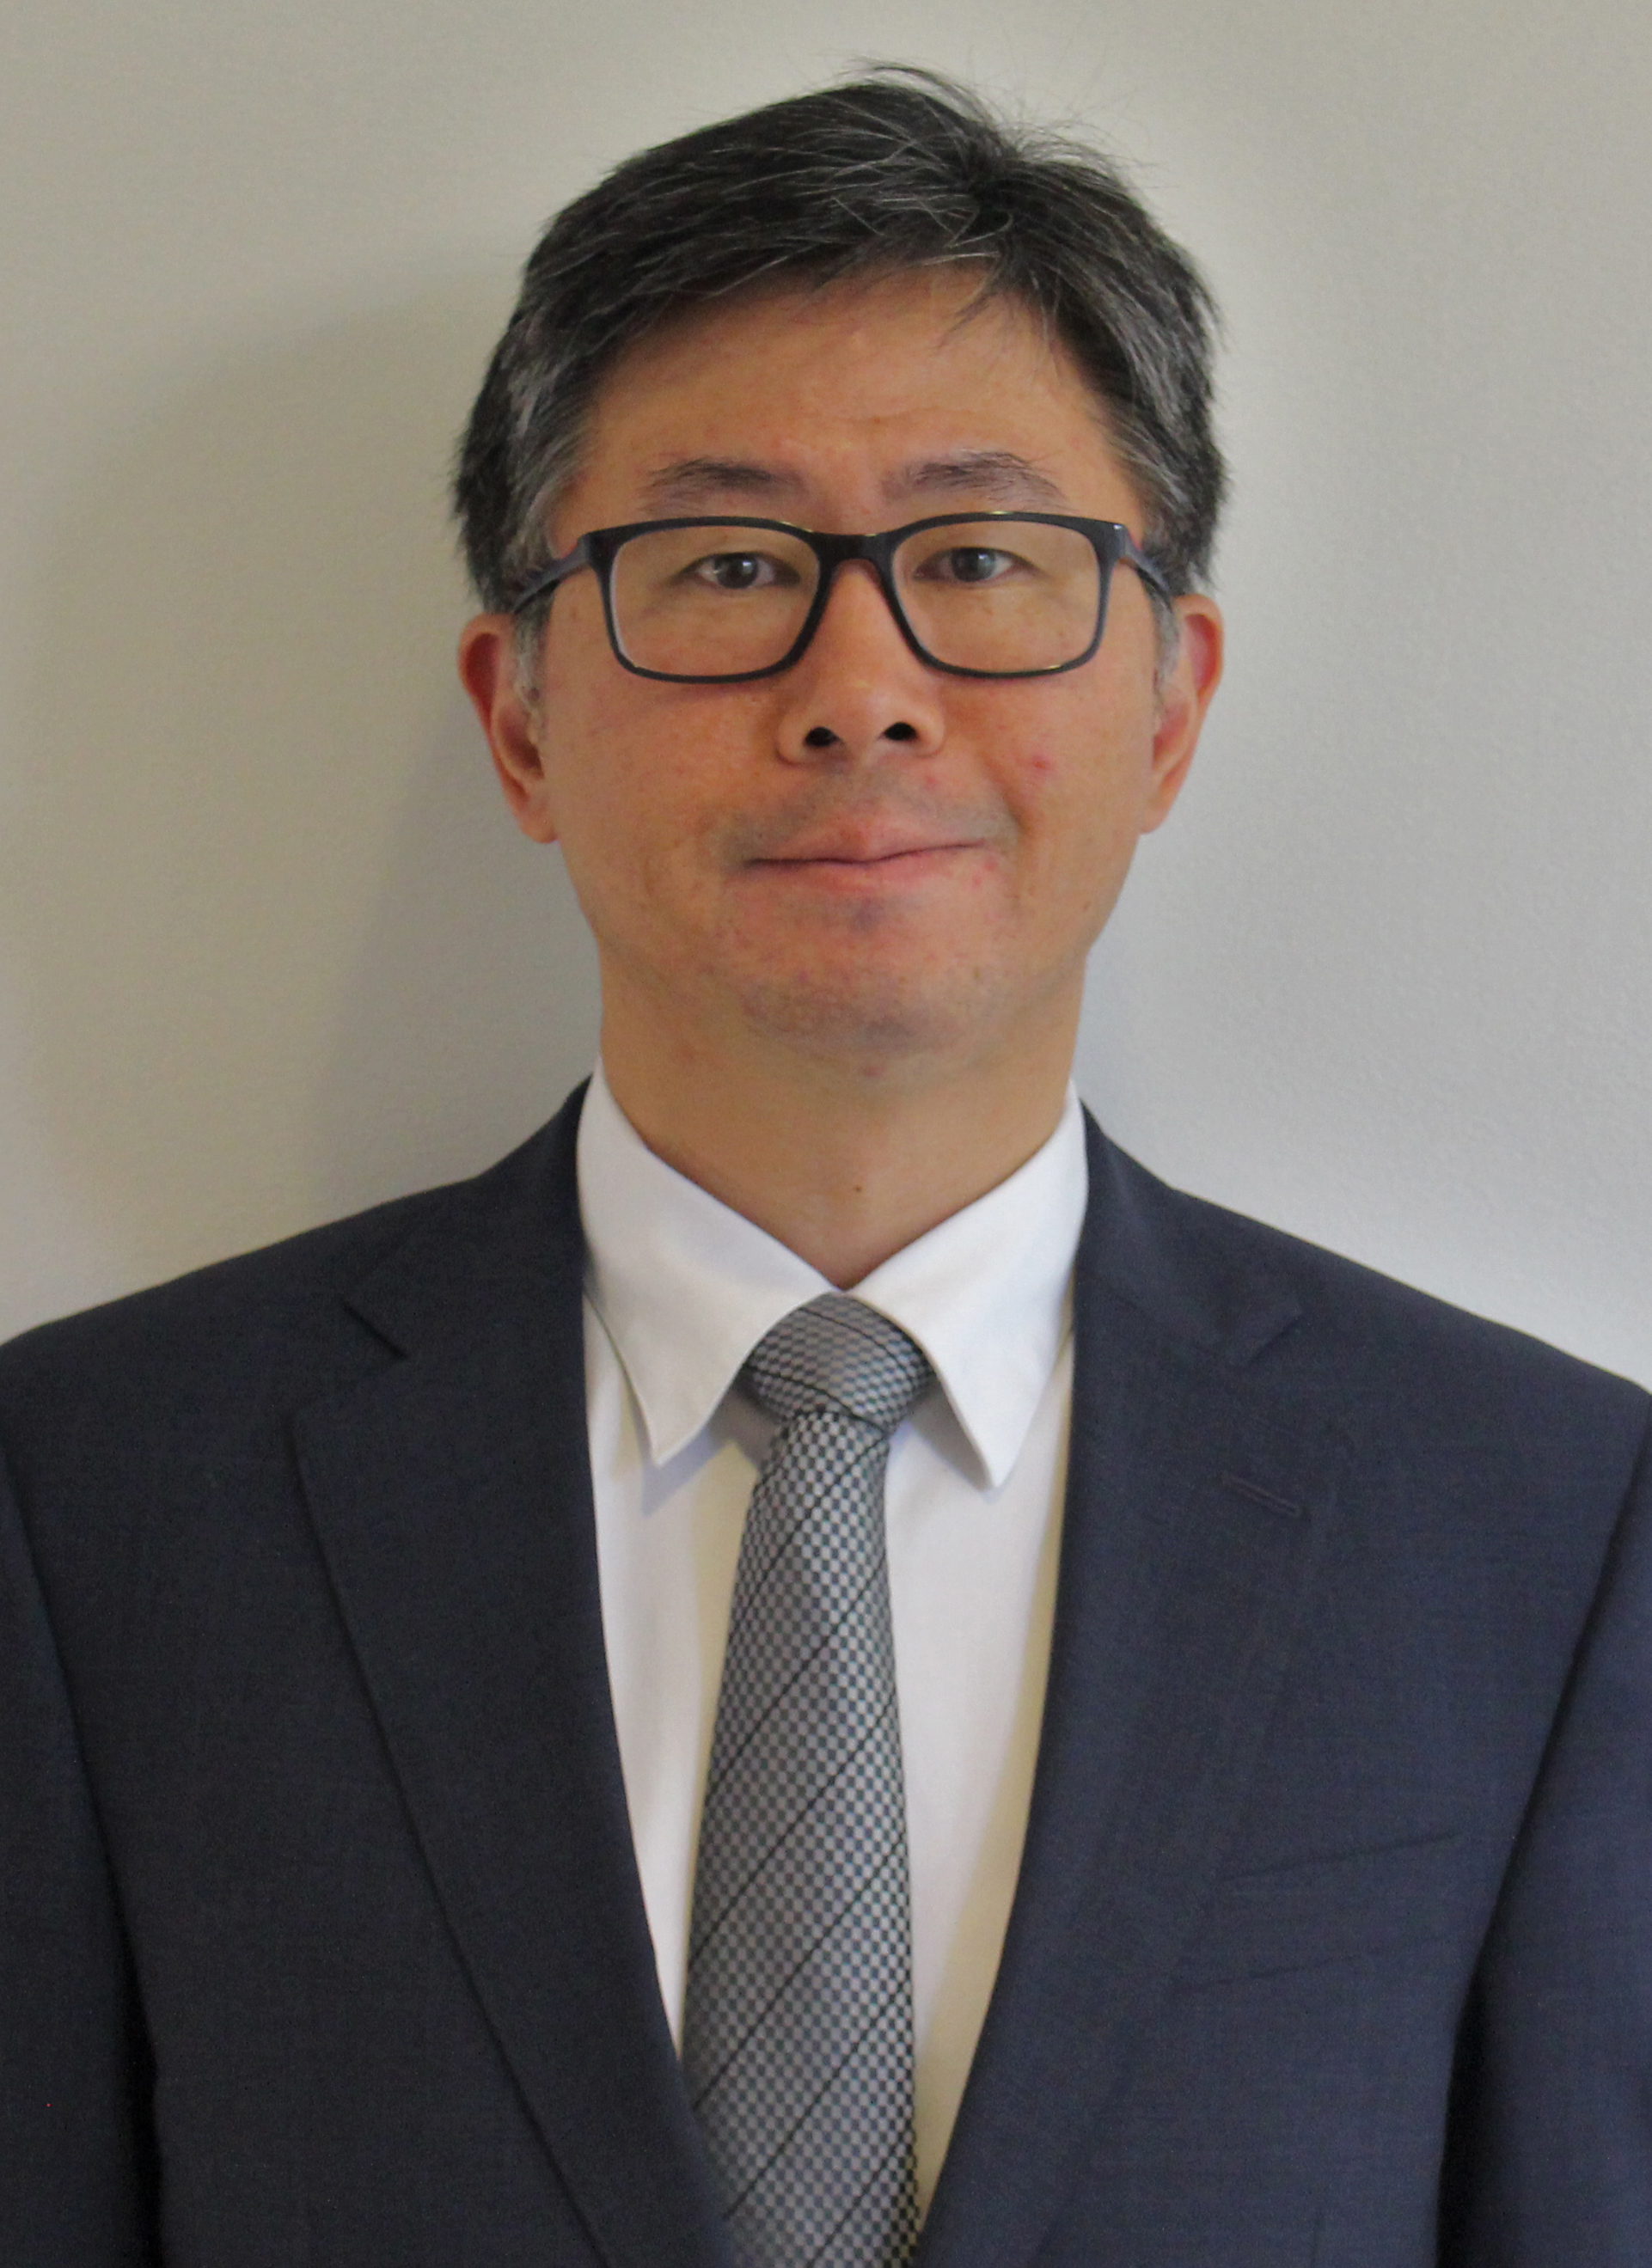 Jin W. Chung, MD, PhD